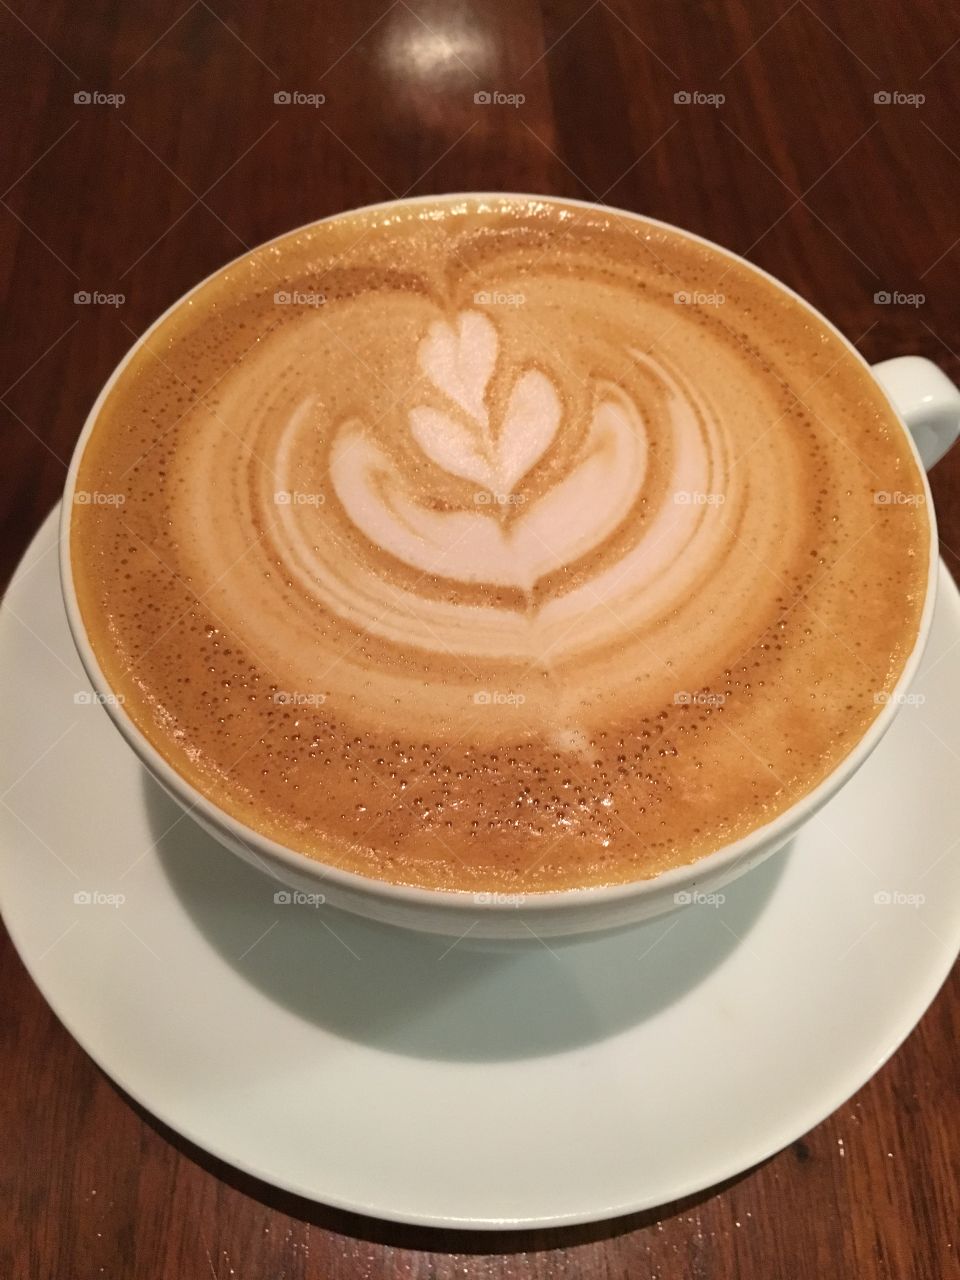 Coffee/Latté